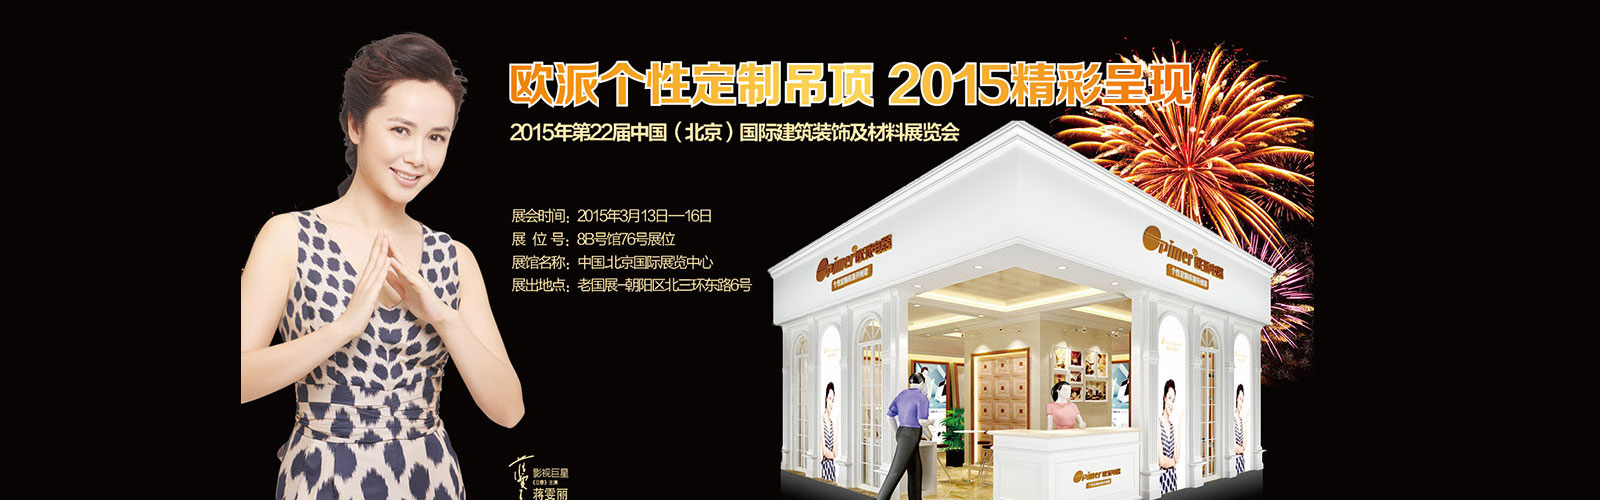 欧派电器参加第22届北京建筑装饰及材料博览会